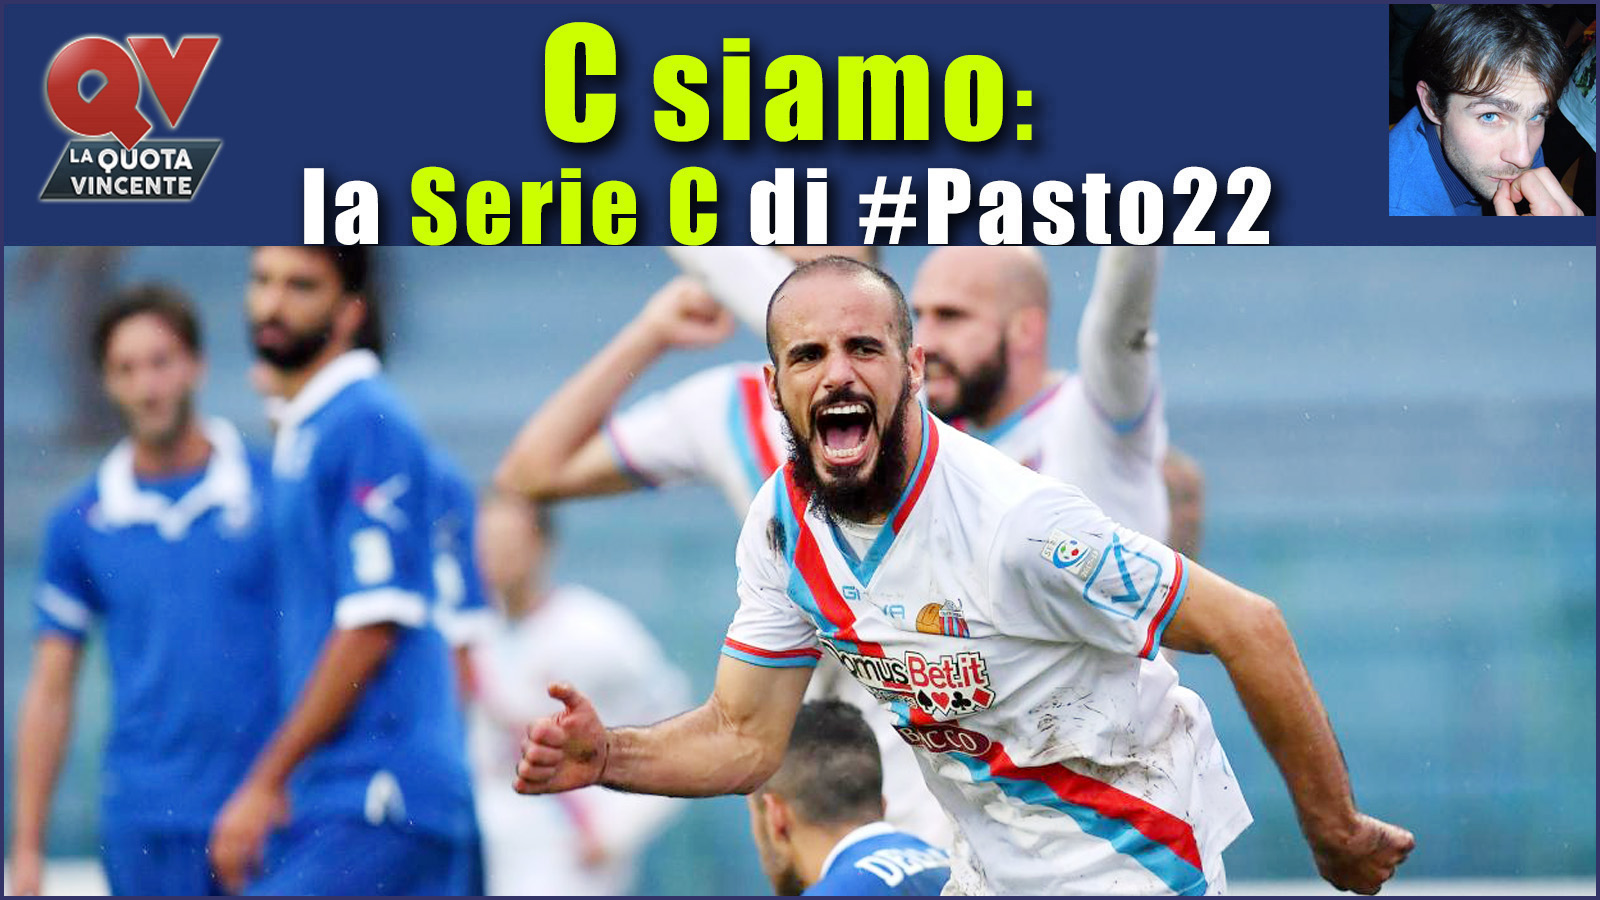 Pronostici Serie C domenica 12 novembre: #Csiamo, il blog di #Pasto22